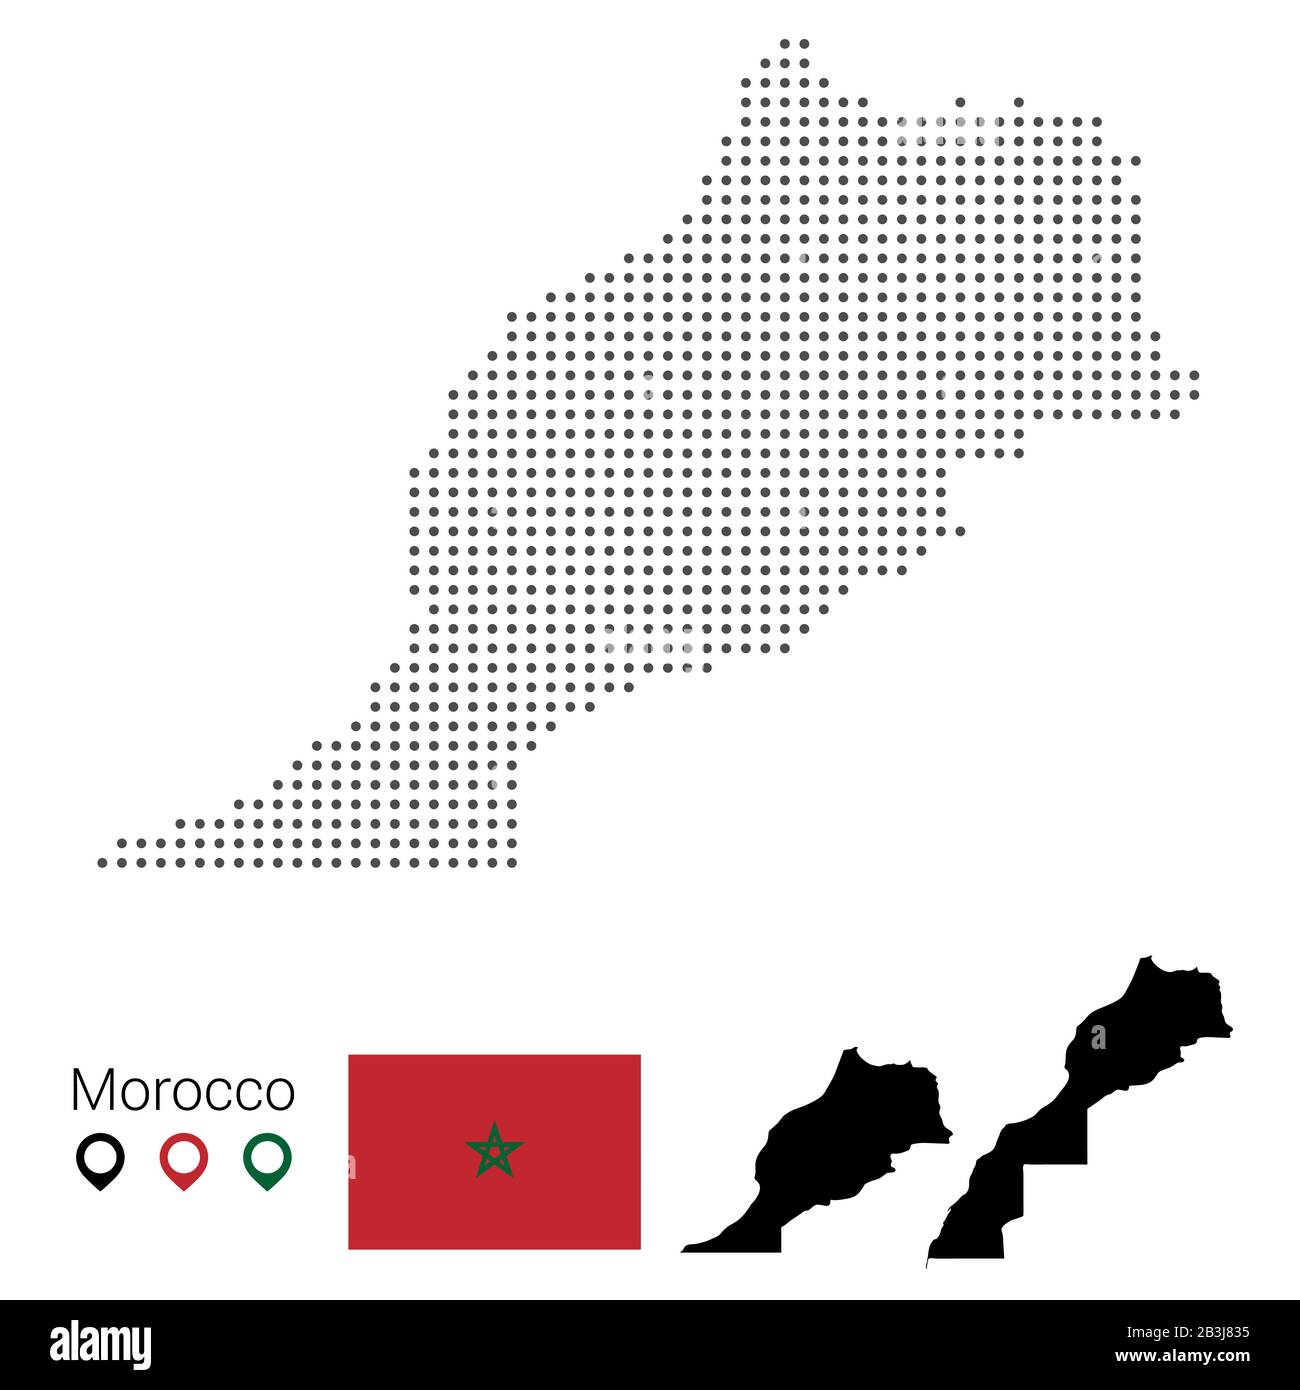 Vecteur de carte marocain parsemé de drapeau et de pin. Illustration vectorielle eps 10 Illustration de Vecteur